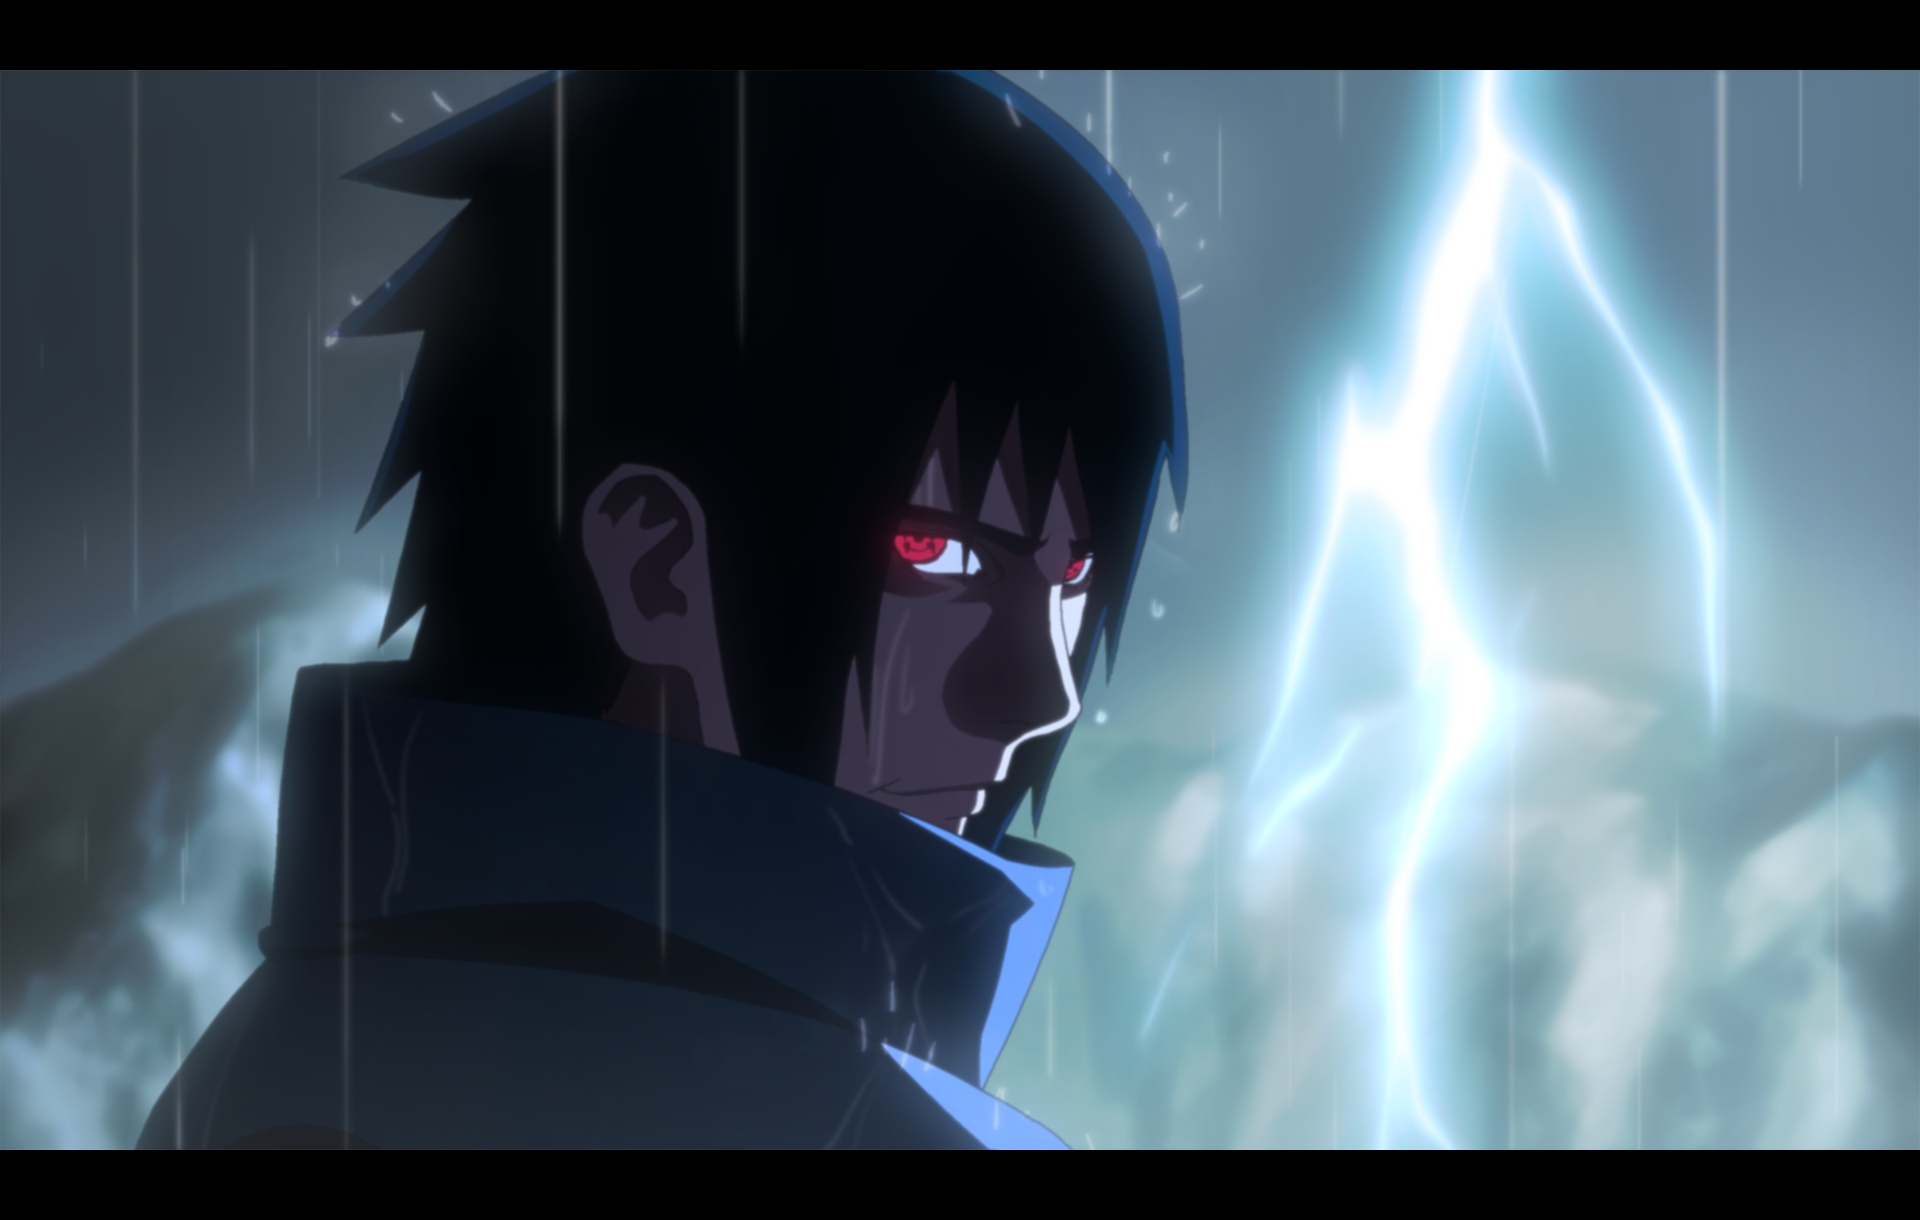 Sasuke Uchiha's Sharingan in striking detail against a dark background, embodying the power of the Uchiha Clan in this dynamic anime wallpaper.